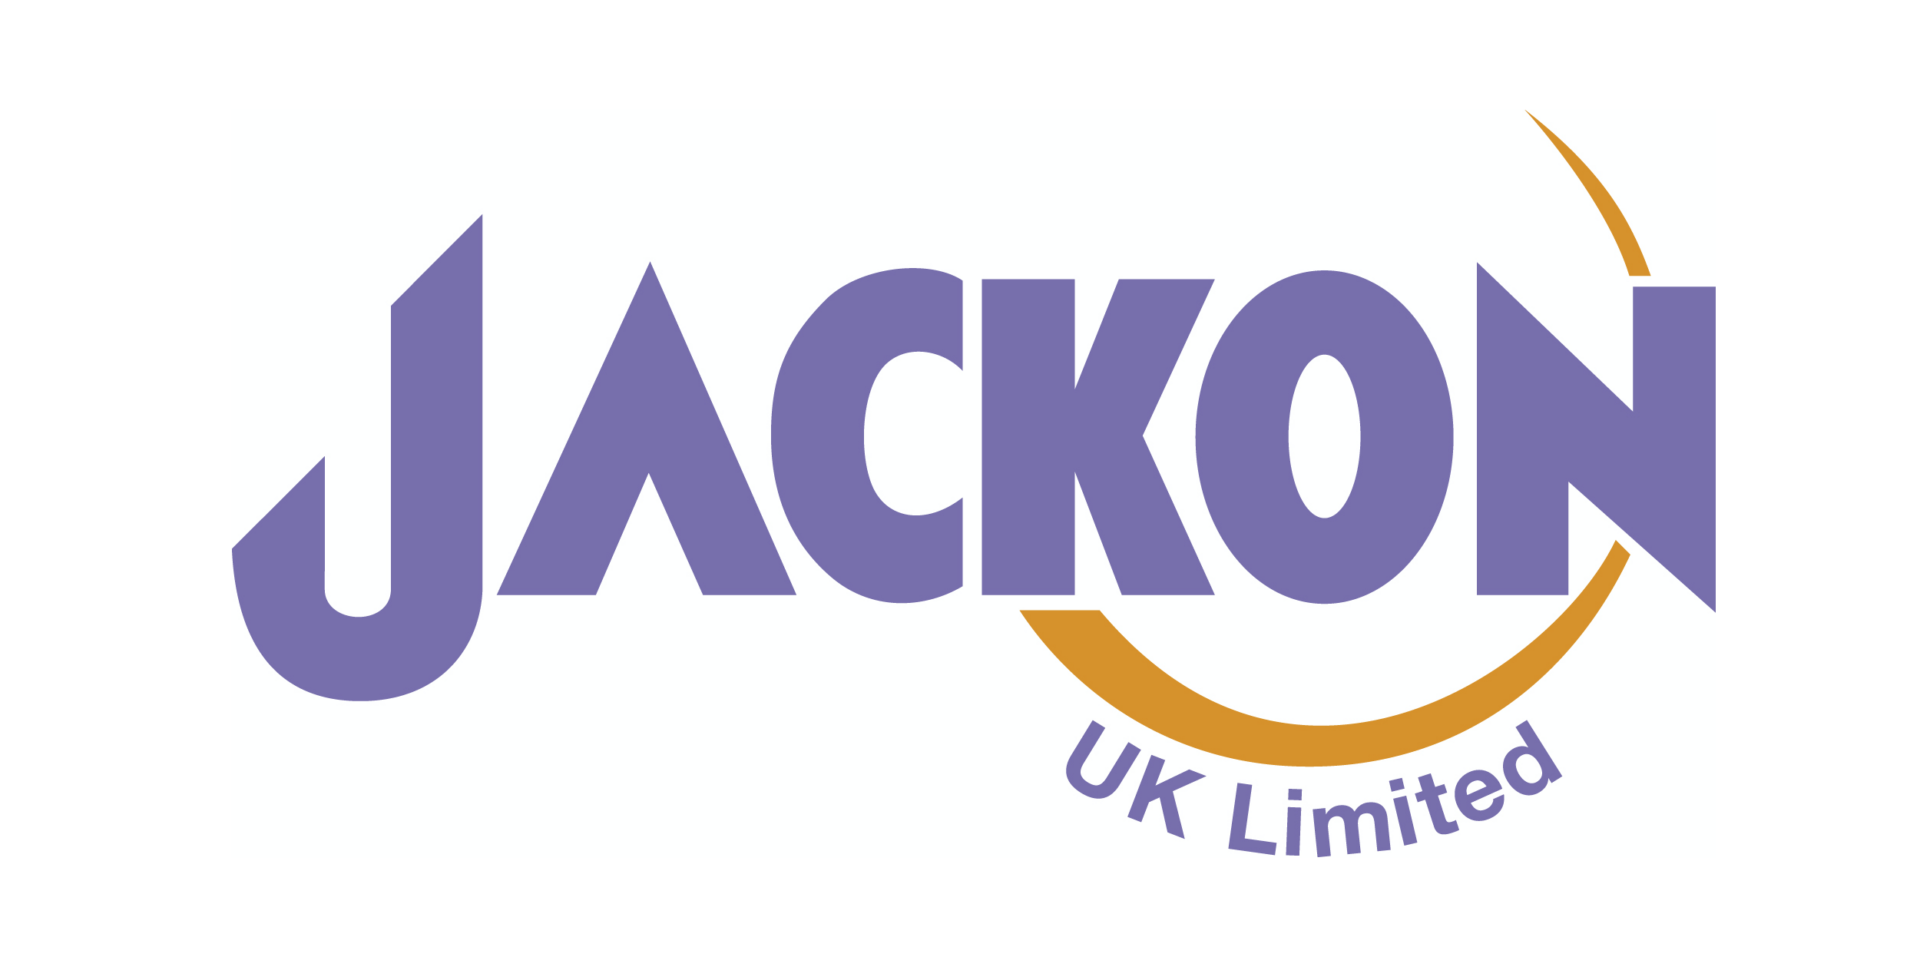 jackon uk limited logo